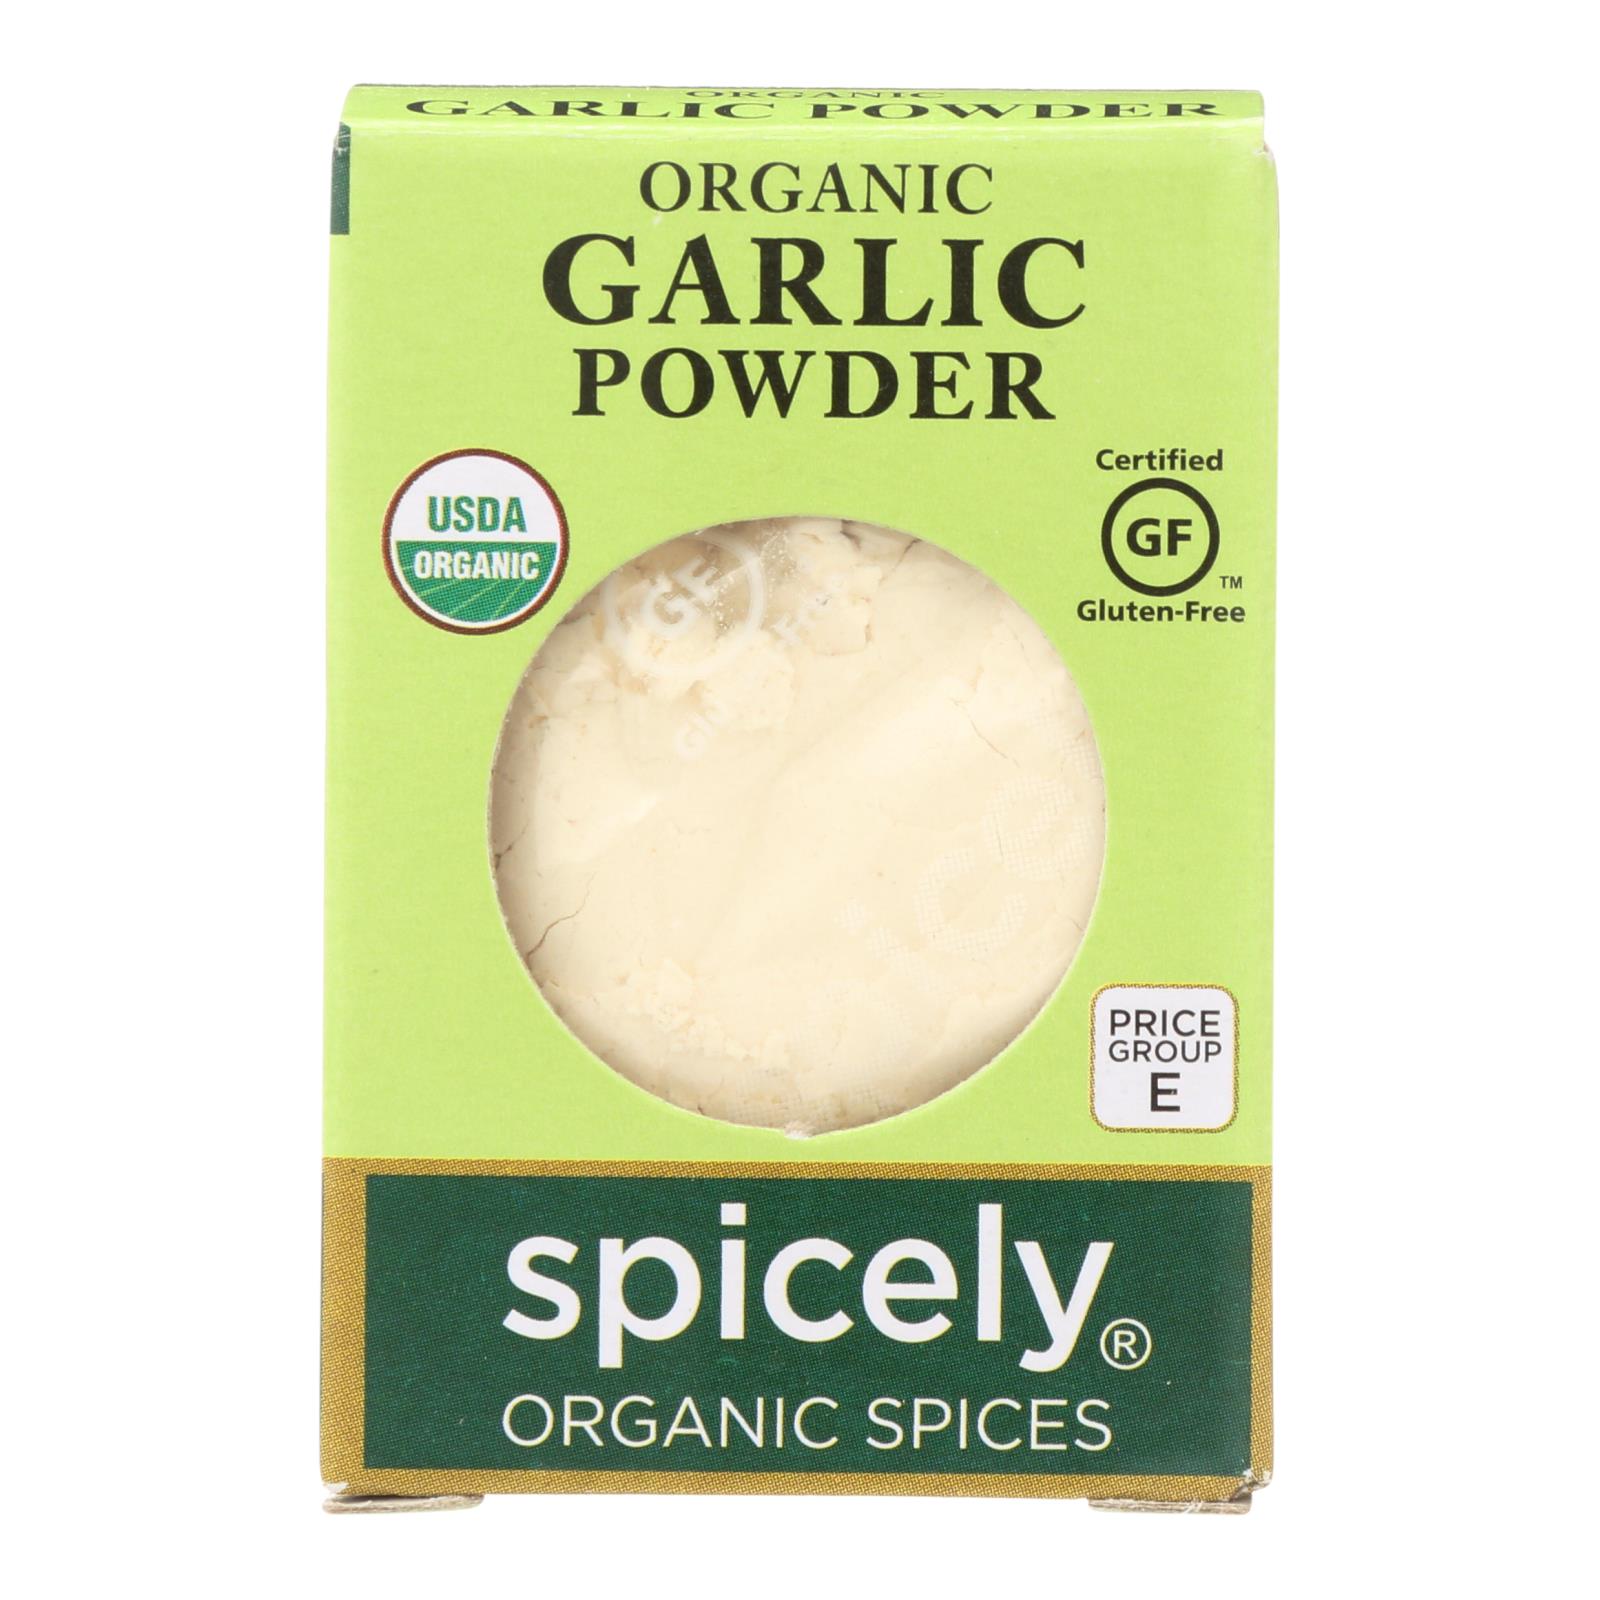 Spicely Organics - Organic Garlic Powder - 6개 묶음상품 - 0.4 oz.